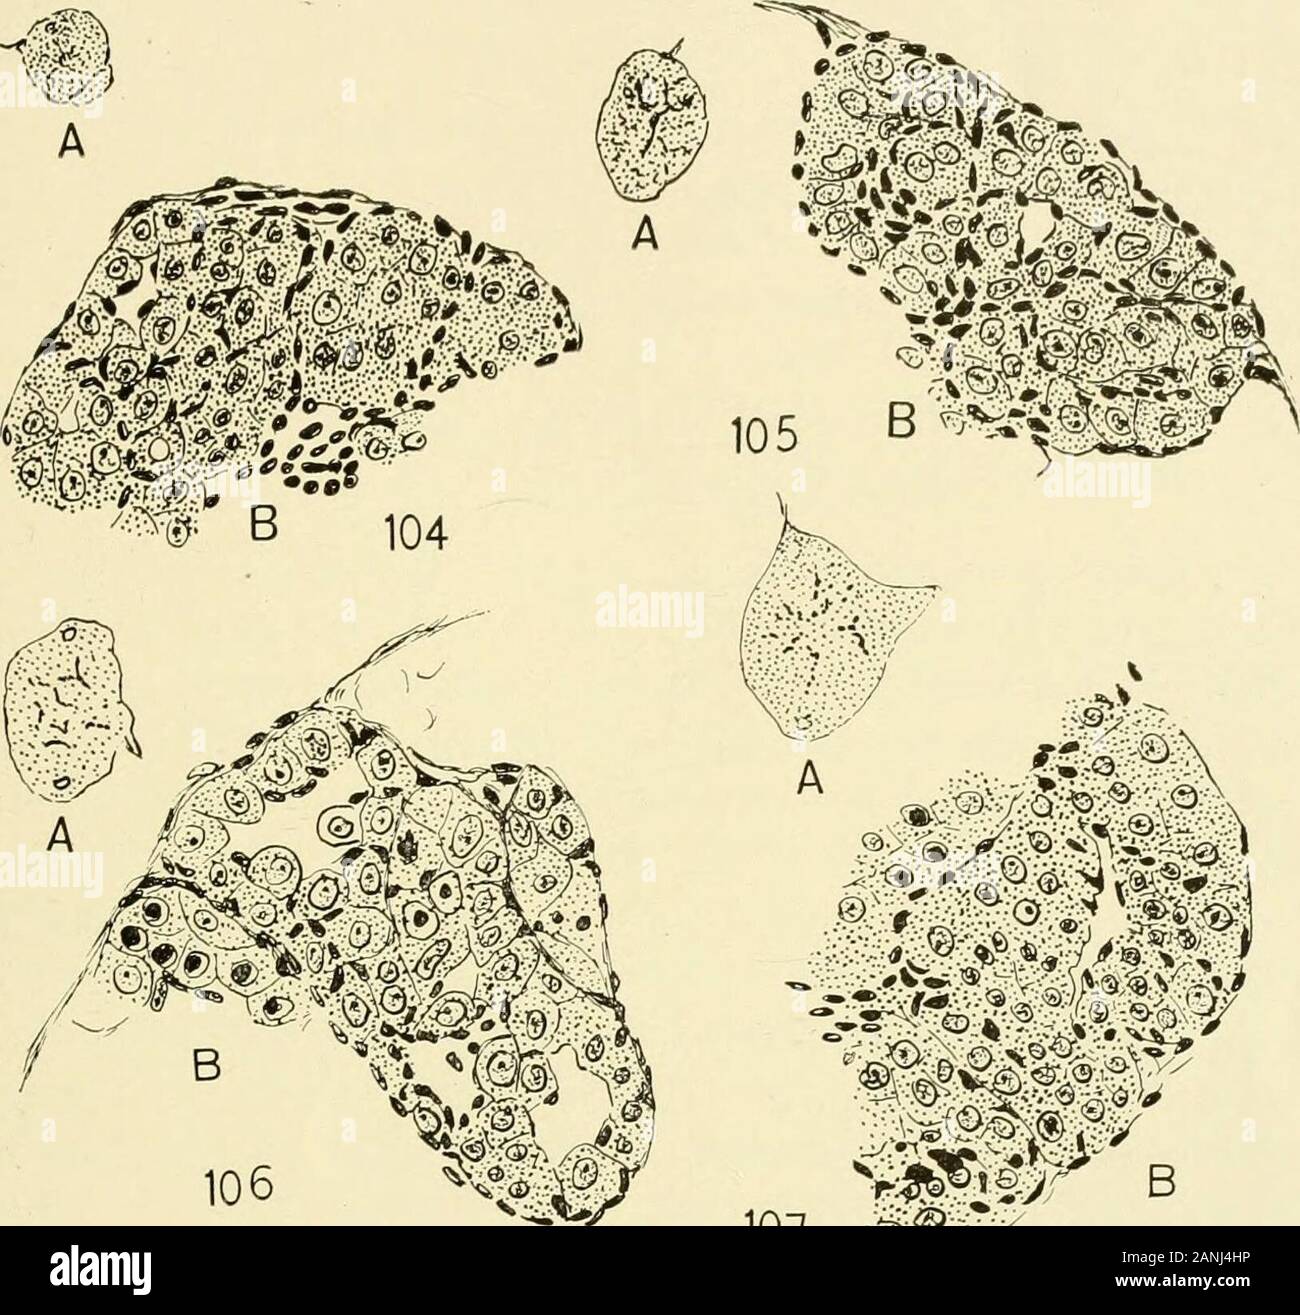 Il giornale di zoologia sperimentale . 100 67 piastra 9 Spiegazione delle figure R. sylvatica. Testicoli 104 A, T. S. larva di controllo all'inizio di metamorfosi (Luglio 29, 1917).X 34. B stessa, mostrando inizio della formazione di tubuli, ma nessun synapsis. X 240. 105 A, T. S. Giovani rana di controllo. X 34. B stesso. X 240. 106 A, T. S. Thyroidless larva più grandi ma della stessa età di larva di figura104. X 34. B stessa, mostrando in anticipo la formazione di tubuli, ma nessun synapsis.X 240. 107 A, T. S. grandi thyroidless larva, ucciso quattro mesi dopo thyroidectomy(Agosto 20, 1917). X 34. B stessa, la spermatogenesi iniziato. X 240. 108 A Foto Stock